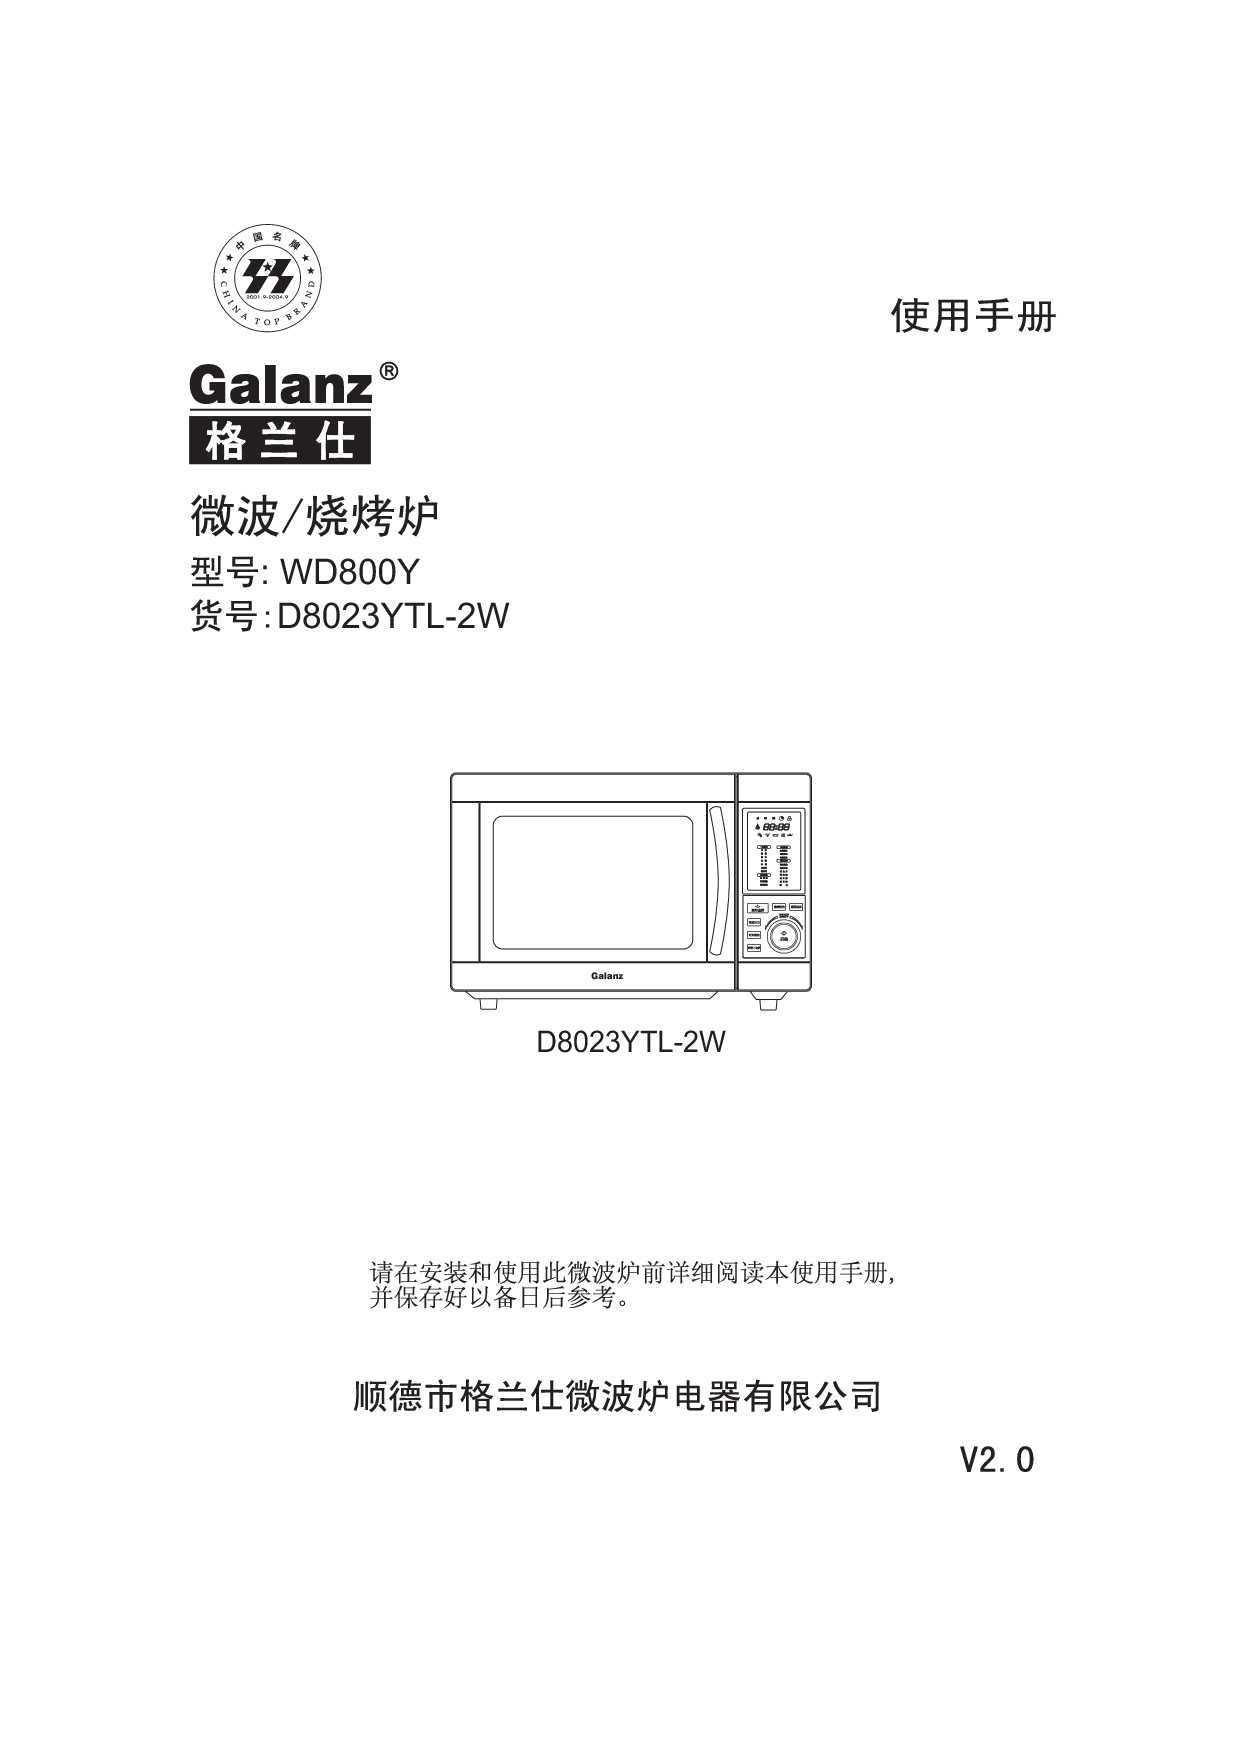 格兰仕 Galanz D8023YTL-2W 使用手册 封面